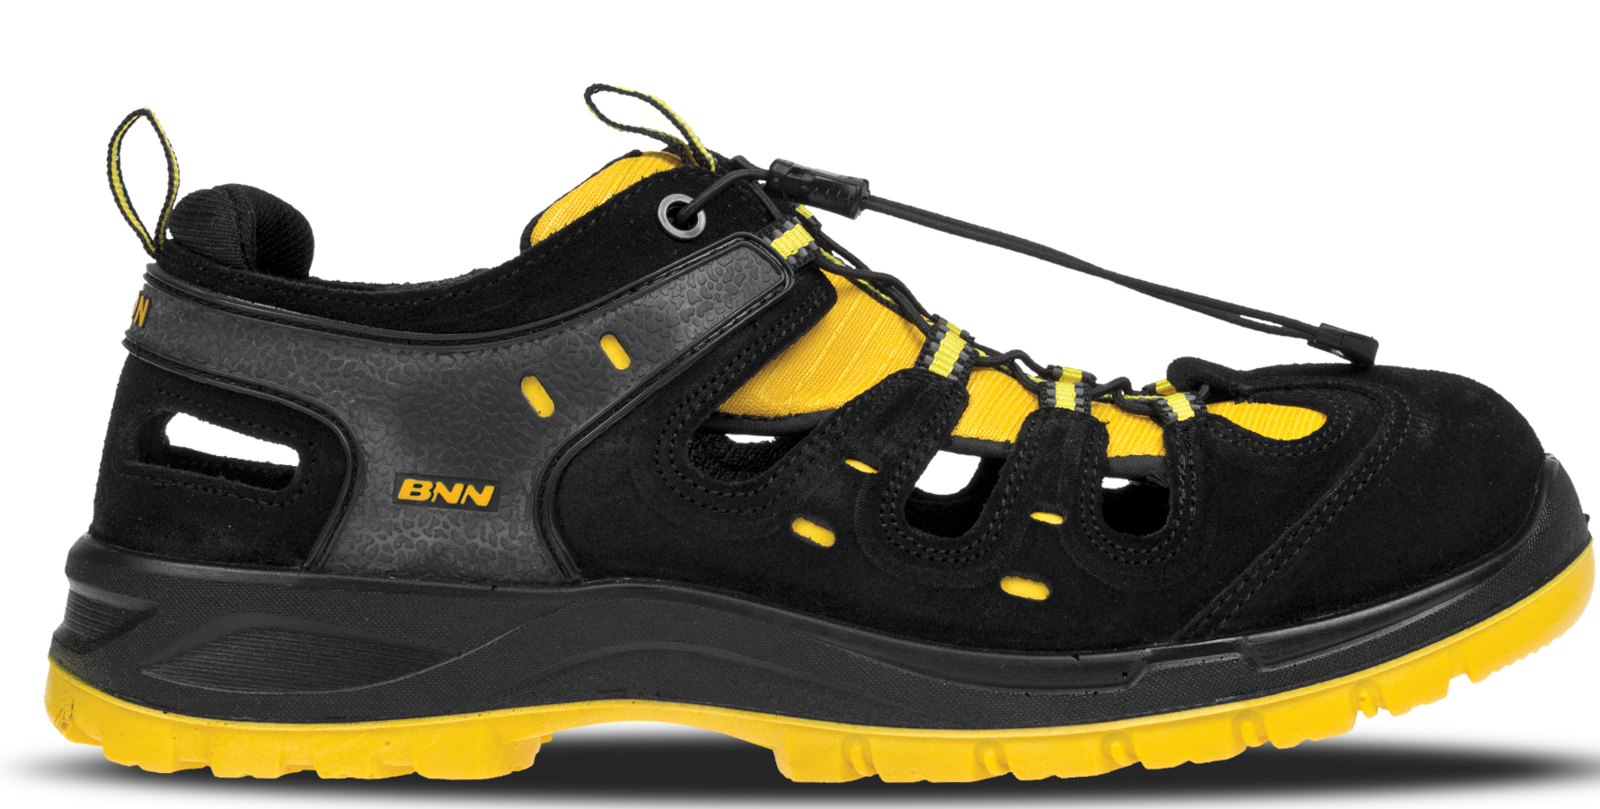 Bezpečnostné sandále Bombis lite NM S1 - veľkosť: 42, farba: žltá